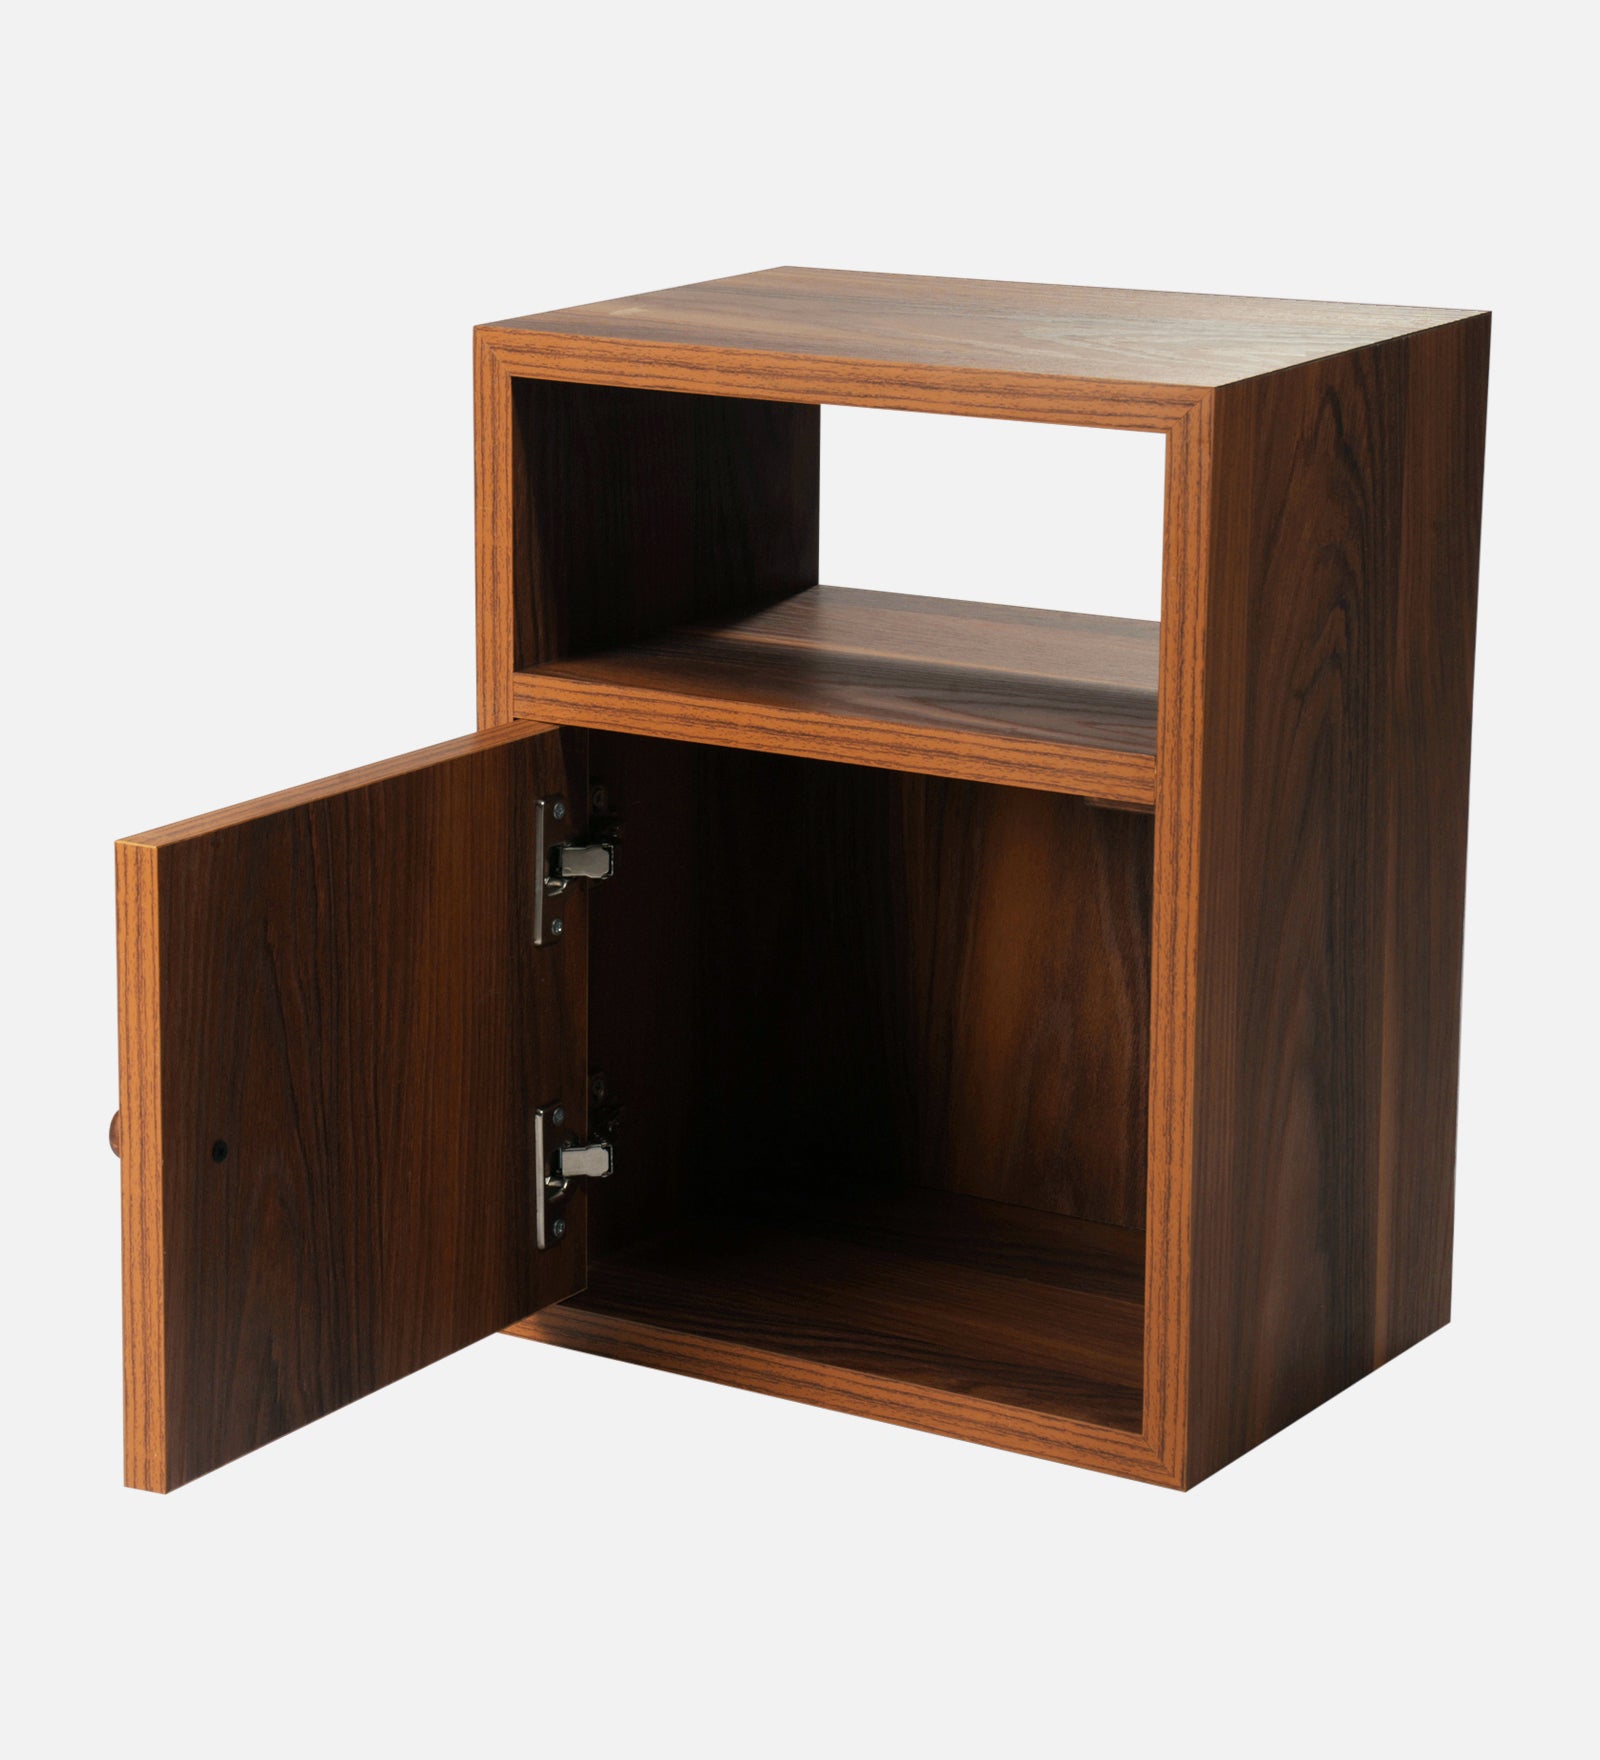 Bedside Chest, Side Table, Bedside Cabinet, Bedside Storage, Bedroom Decor, Wooden Chest